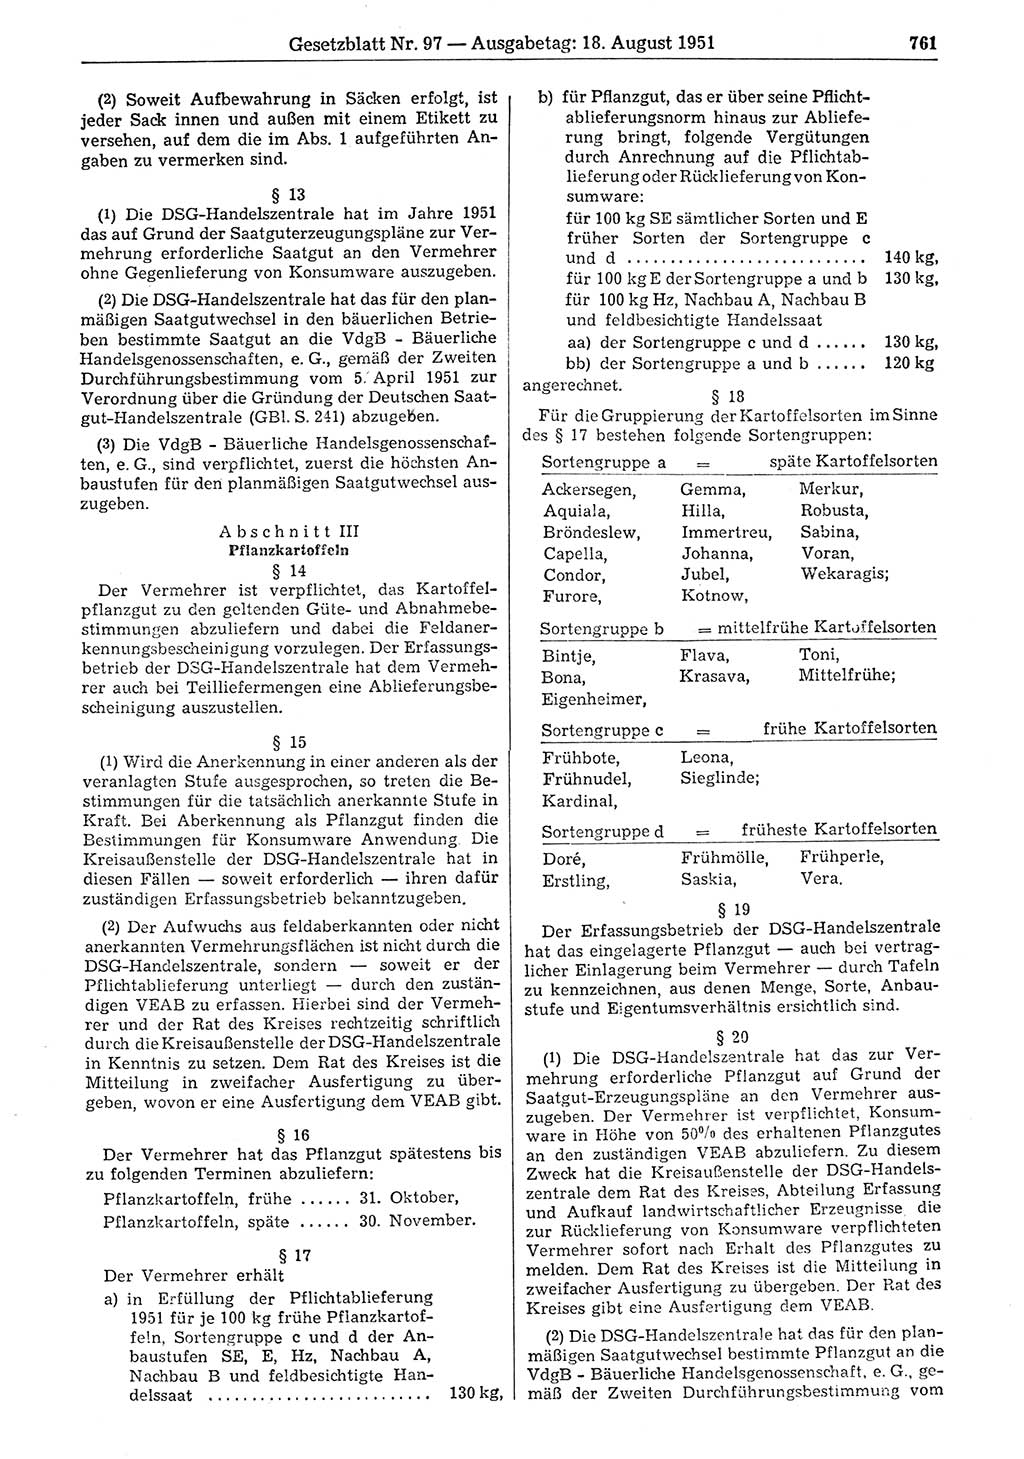 Gesetzblatt (GBl.) der Deutschen Demokratischen Republik (DDR) 1951, Seite 761 (GBl. DDR 1951, S. 761)